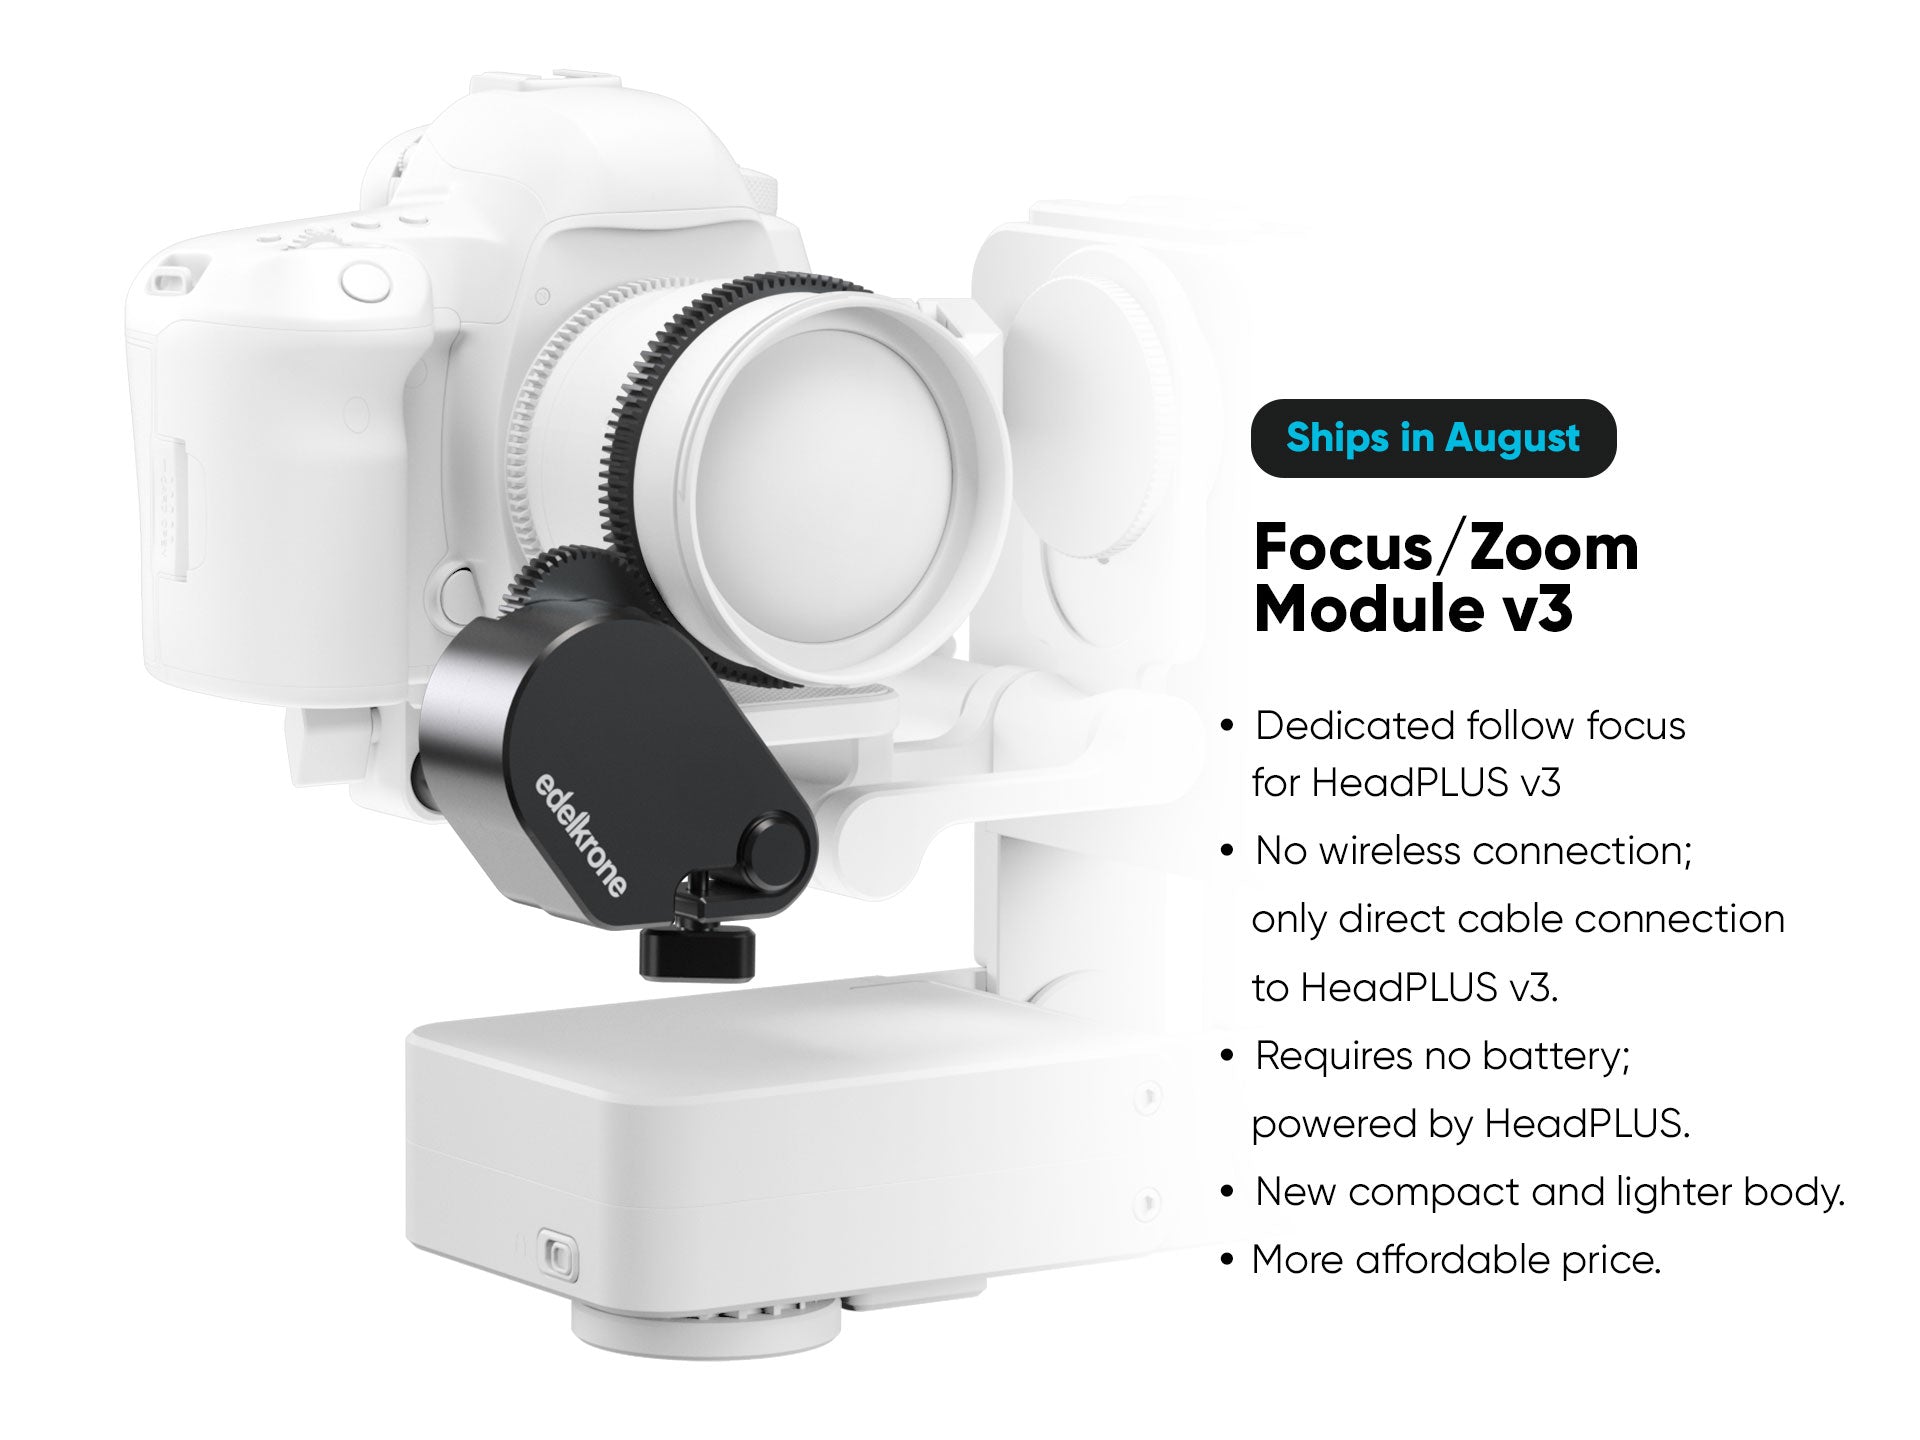 Focus/Zoom Module for HeadPLUS